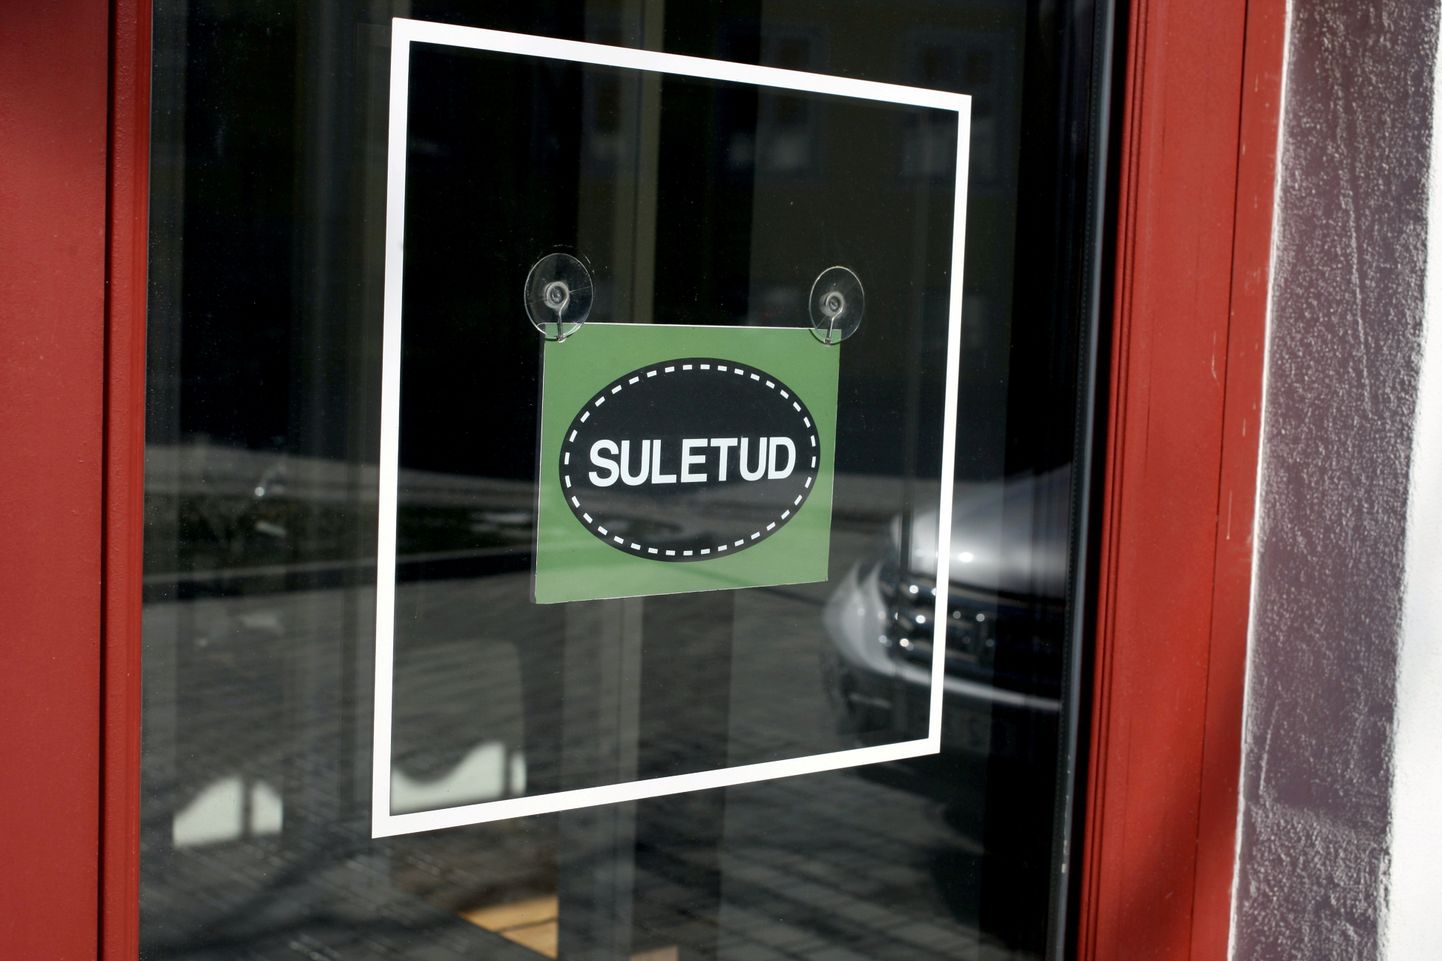 Zīme "Slēgts" Igaunijas pilsētā Kuresārē.